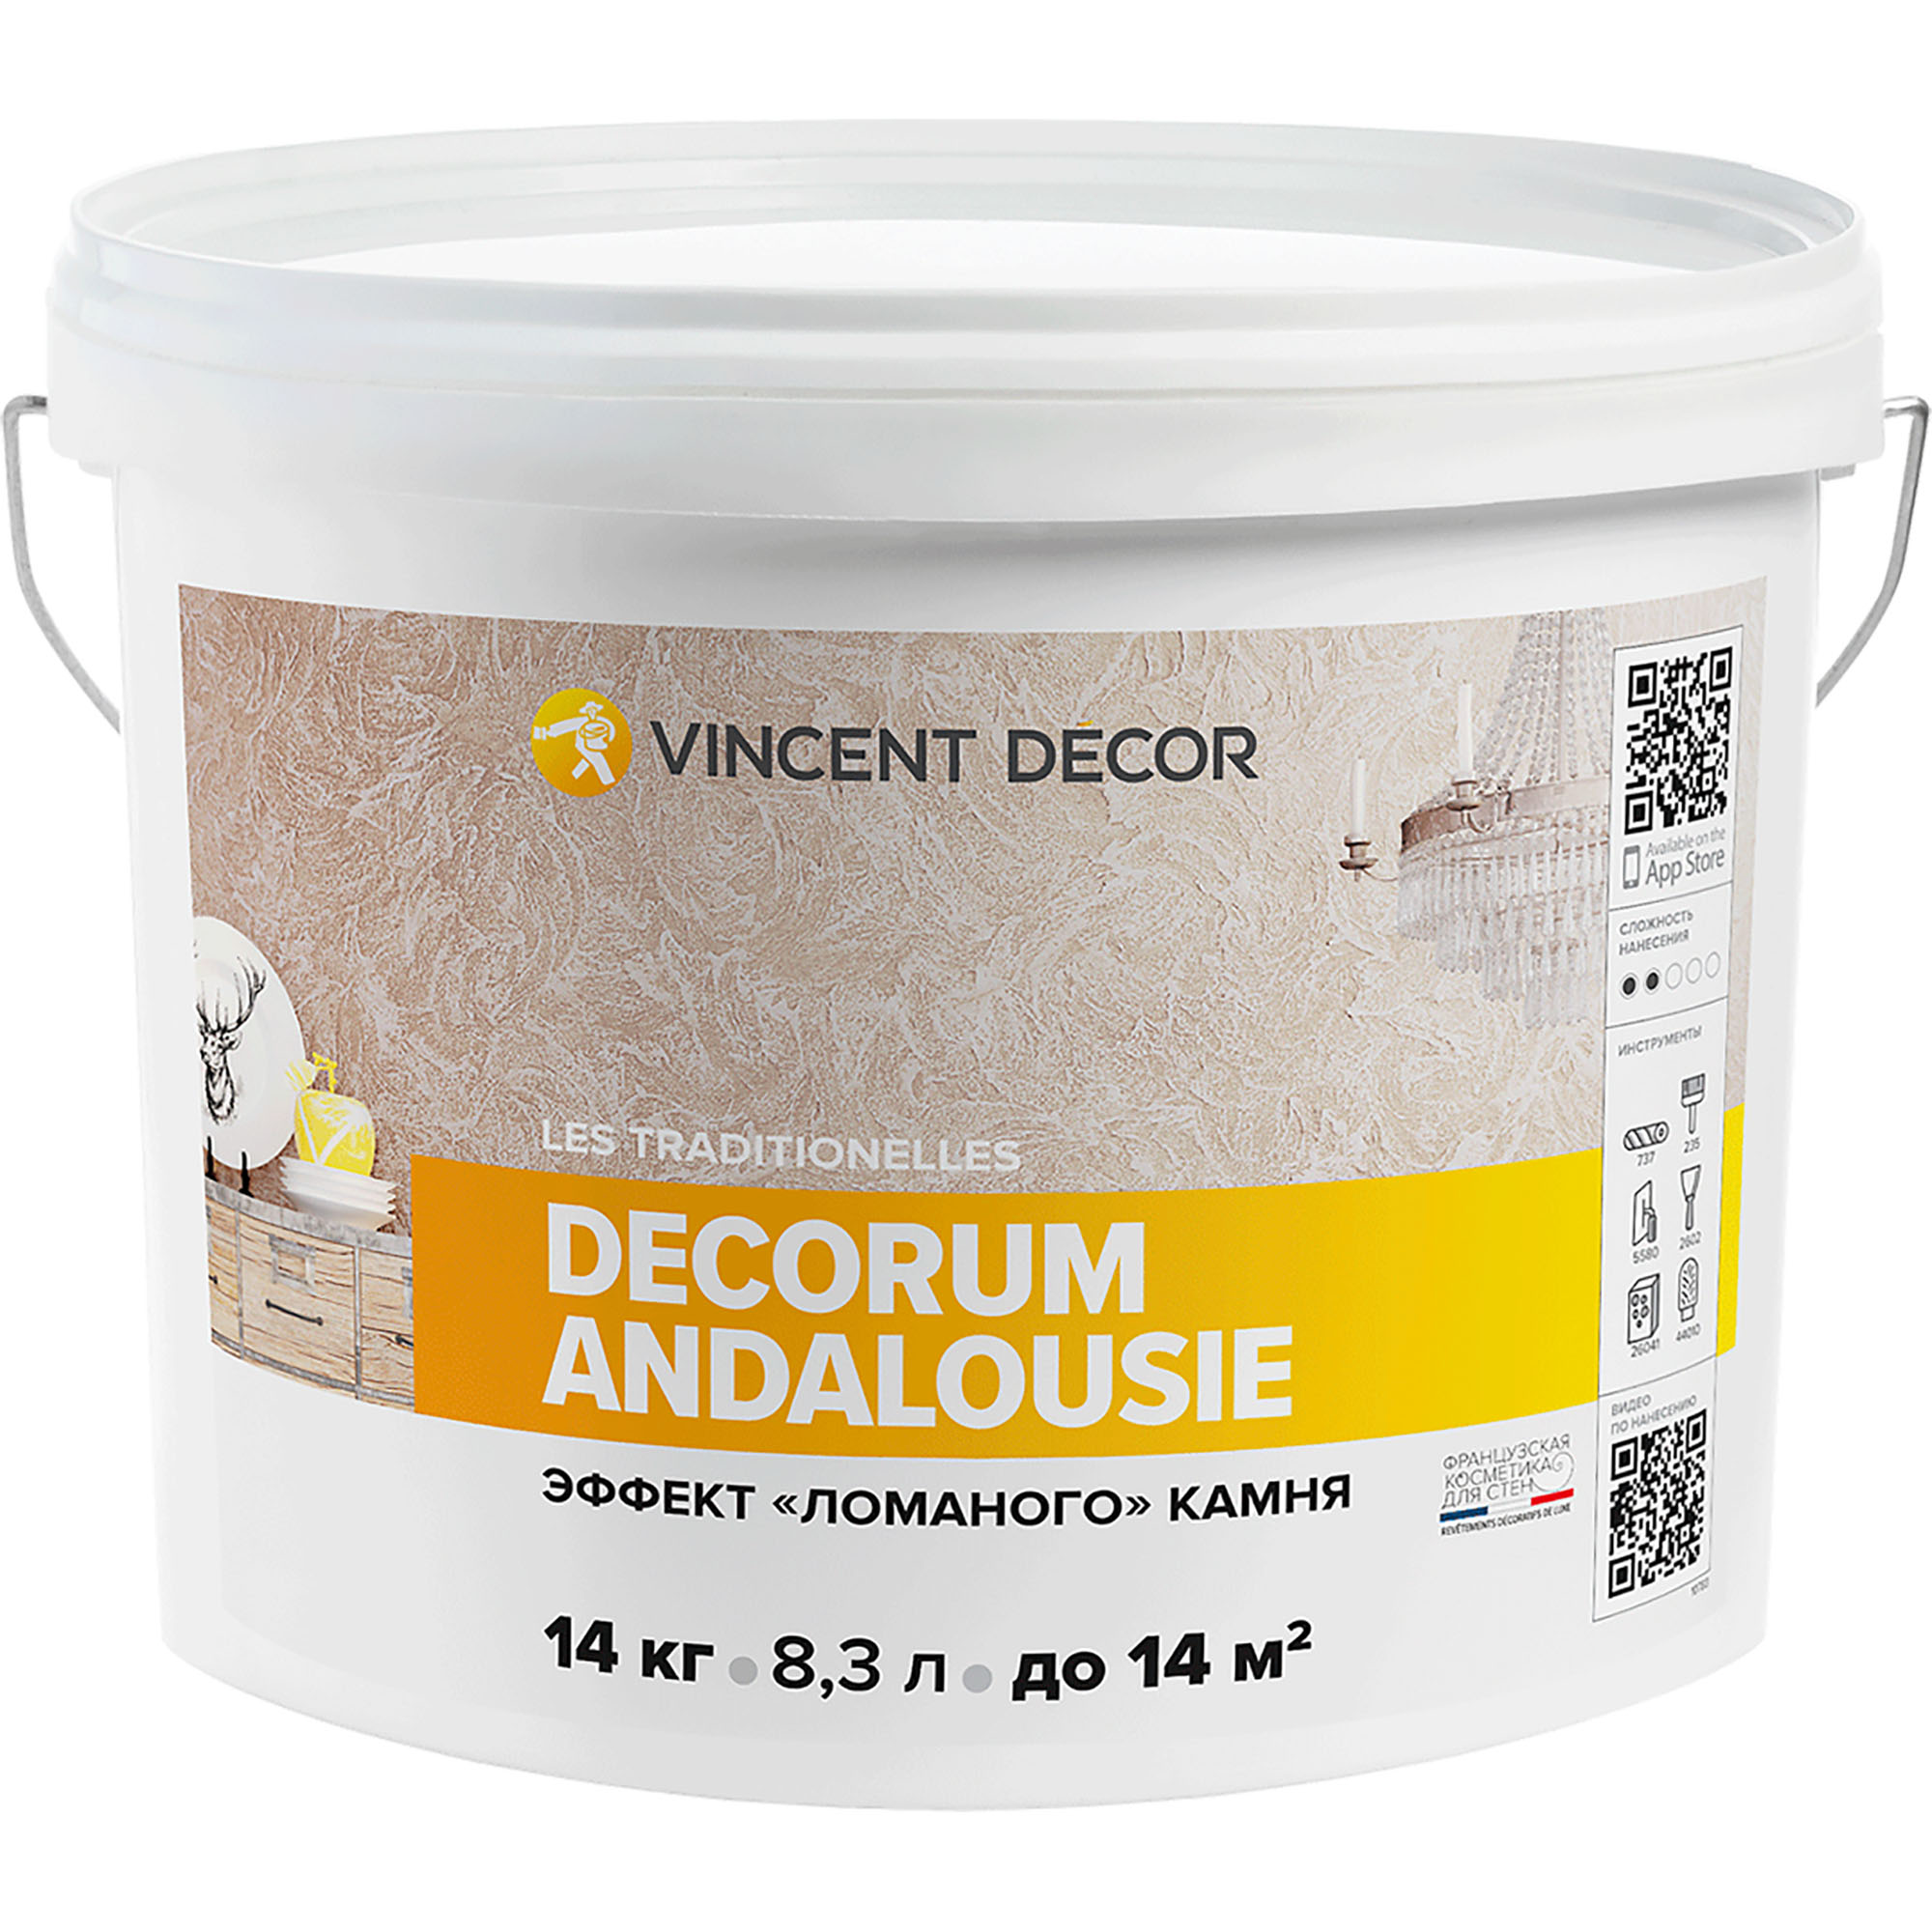 фото Декоративное покрытие vincent decor decorum andalousie c эффектом ломаного камня 14 кг